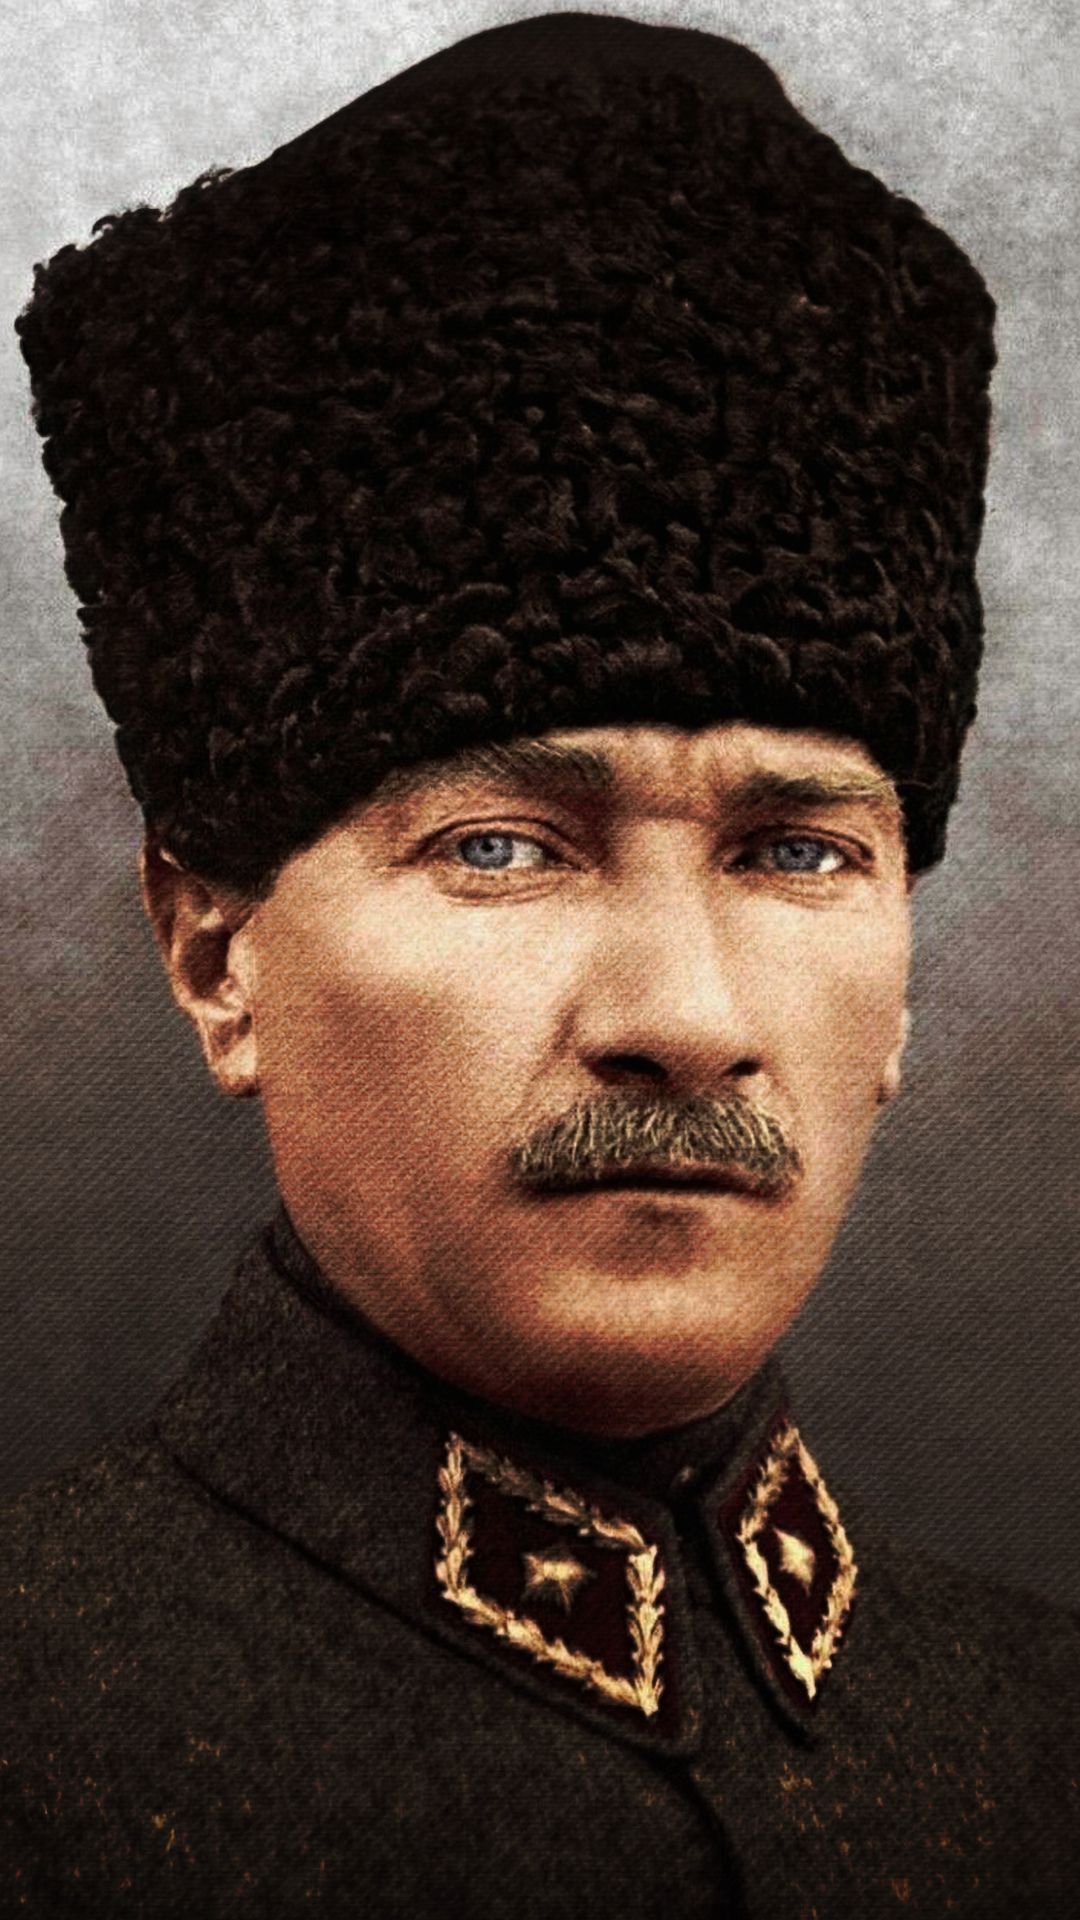 Atatürk renkli resim indir, Ataturk resım hizli, resim yükle, indir, hızlı resim url, yükle, Atatürk telefon duvar kagıdı indir, profil resimi, Ataturk resimleri ,Ataturk fotograflari Atatürk-renkli-resim-Ataturk-resım-hizli-resim-yükle-indir-hızlı resim-url-yükle-Atatürk-telefon-duvar-kagıdı-indir-profil-resimi-Ataturk-resimleri-Ataturk-fotograflari  Türkiyyenin  tarihi liderlerinden biri de Mustafa Kemal Atatürkdür. Türk halkı  Atatürkü kendi kahramanı ve lideri larak gördüğü için belkide  Türkiyyede  en çok sevilen bir tarihi şahısdır. Bu günkü yayınımızda Atatürkün renkli resimlerini size takdim edeceğiz. İsteyen telefonuna indirerek telefon duvar kağıdı olarak kullana bilir ve ya instagram ve facebook profillerinde paylaşa bilirler. Hızlı resim indirmenin bize  sağladığı imkanlardan yararlanarak Atatürkün renkli resimlerini hd olarak ücretsiz indire bilirsiniz. Resimin üzerine basılı tutarak açılan pencerede resmi indir yazısına tıklayarak fotoğrafları indire bilirsiniz     ATATÜRK'ÜN HAYATI KISACA Mustafa Kemal Atatürk 1881 yılında Selanik’te doğdu. Ali Rıza Efendi babası,  Zübeyde Hanım ise annesidir. Mustafa Kemal Atatürk’ün eğitim aldığı okullar baştan sona     şöyledir; ilkokul eğitimini Mahalle Mektebinde ve Şemsi Efendi Okulunda, ortaokul eğitimini  Selanik Mülkiye Rüştiyesi ve Selanik Askeri Rüştiyesinde, lise eğitimini Selanik Askeri  İdadisi, üniversite eğitimini ise Harp Okulu ve Harp Akademisinde almıştır. 1893 yılında  Askeri Rüştiye’de okurken matematik öğretmeni ona Kemal ismini verdi ve böylece ismi  Mustafa Kemal oldu.  I. Dünya Savaşı nihayete erdiğinde Mondros Ateşkes antlaşması imzalanması ile vatan  topraklarını paylaşılacaktı. Fakat duruma el koyan Mustafa Kemal, 19 Mayıs 1919’da     Samsun’a çıkarak milli mücadelenin temellerini attı.23 Nisan 1920 tarihinde TBMM’nin     açılmasına önder olan Mustafa Kemal Meclis tarafından da Hükümet Başkanı seçildi. 5  Ağustos 1921’de yine Meclis tarafından Başkomutan seçildi. Sakarya Savaşı’nın  kazanılmasındaki büyük emeklerinden dolayı Gazilik unvanı ve Mareşallik rütbesi ile  şereflendirildi.  29 Ekim 1923 tarihinde Cumhuriyet ilan edildi ve Mustafa Kemal Atatürk Türkiye  Cumhuriyeti’nin ilk Cumhurbaşkanı koltuğuna oturdu. 1934 yılında Gazi Mustafa Kemal’e  meclis “Atatürk” soyadını lâyık gördü.  10 Kasım 1938 tarihinde Dolmabahçe Sarayı’nda hayatına veda etti. Tüm ülkeyi yasa  boğdu. Ancak inkılapları ve ülkemize kazandırdıklarıyla kalbimizde sonsuzluğu ulaşmış bir  liderdir.